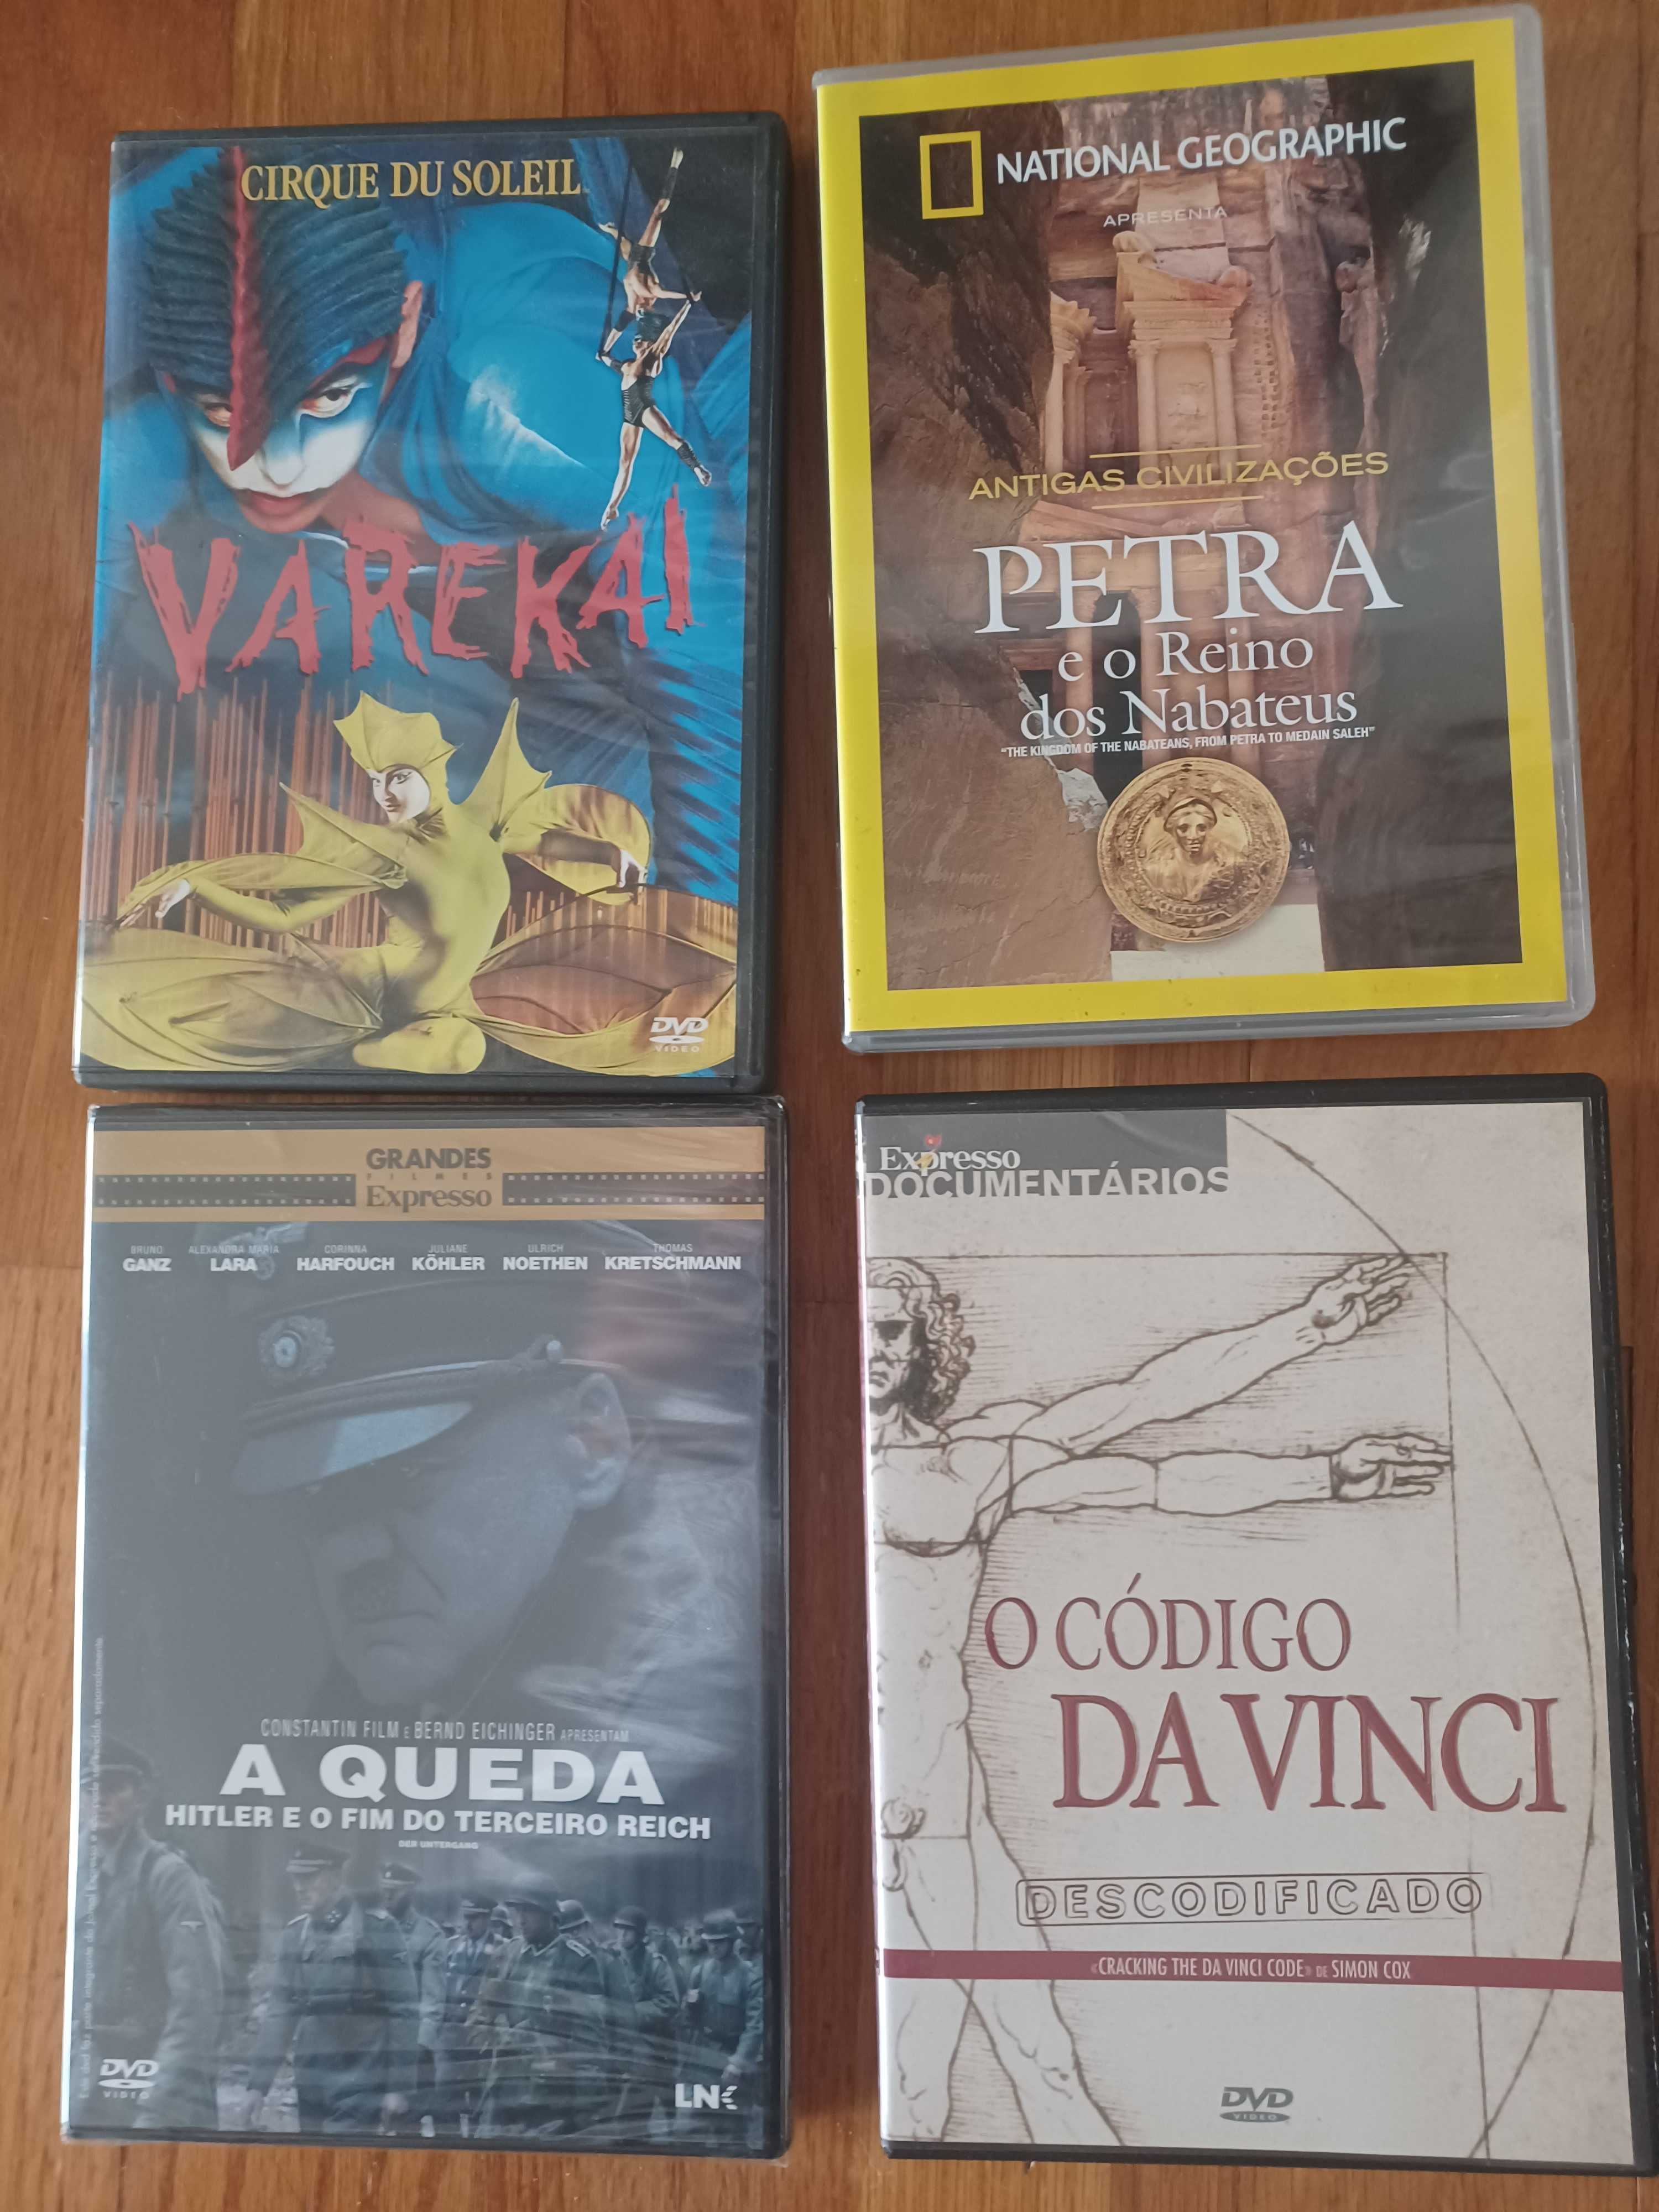 DVD's e VHS de Filmes, Circo do Soleil, Blu-ray Bruce Springsteen